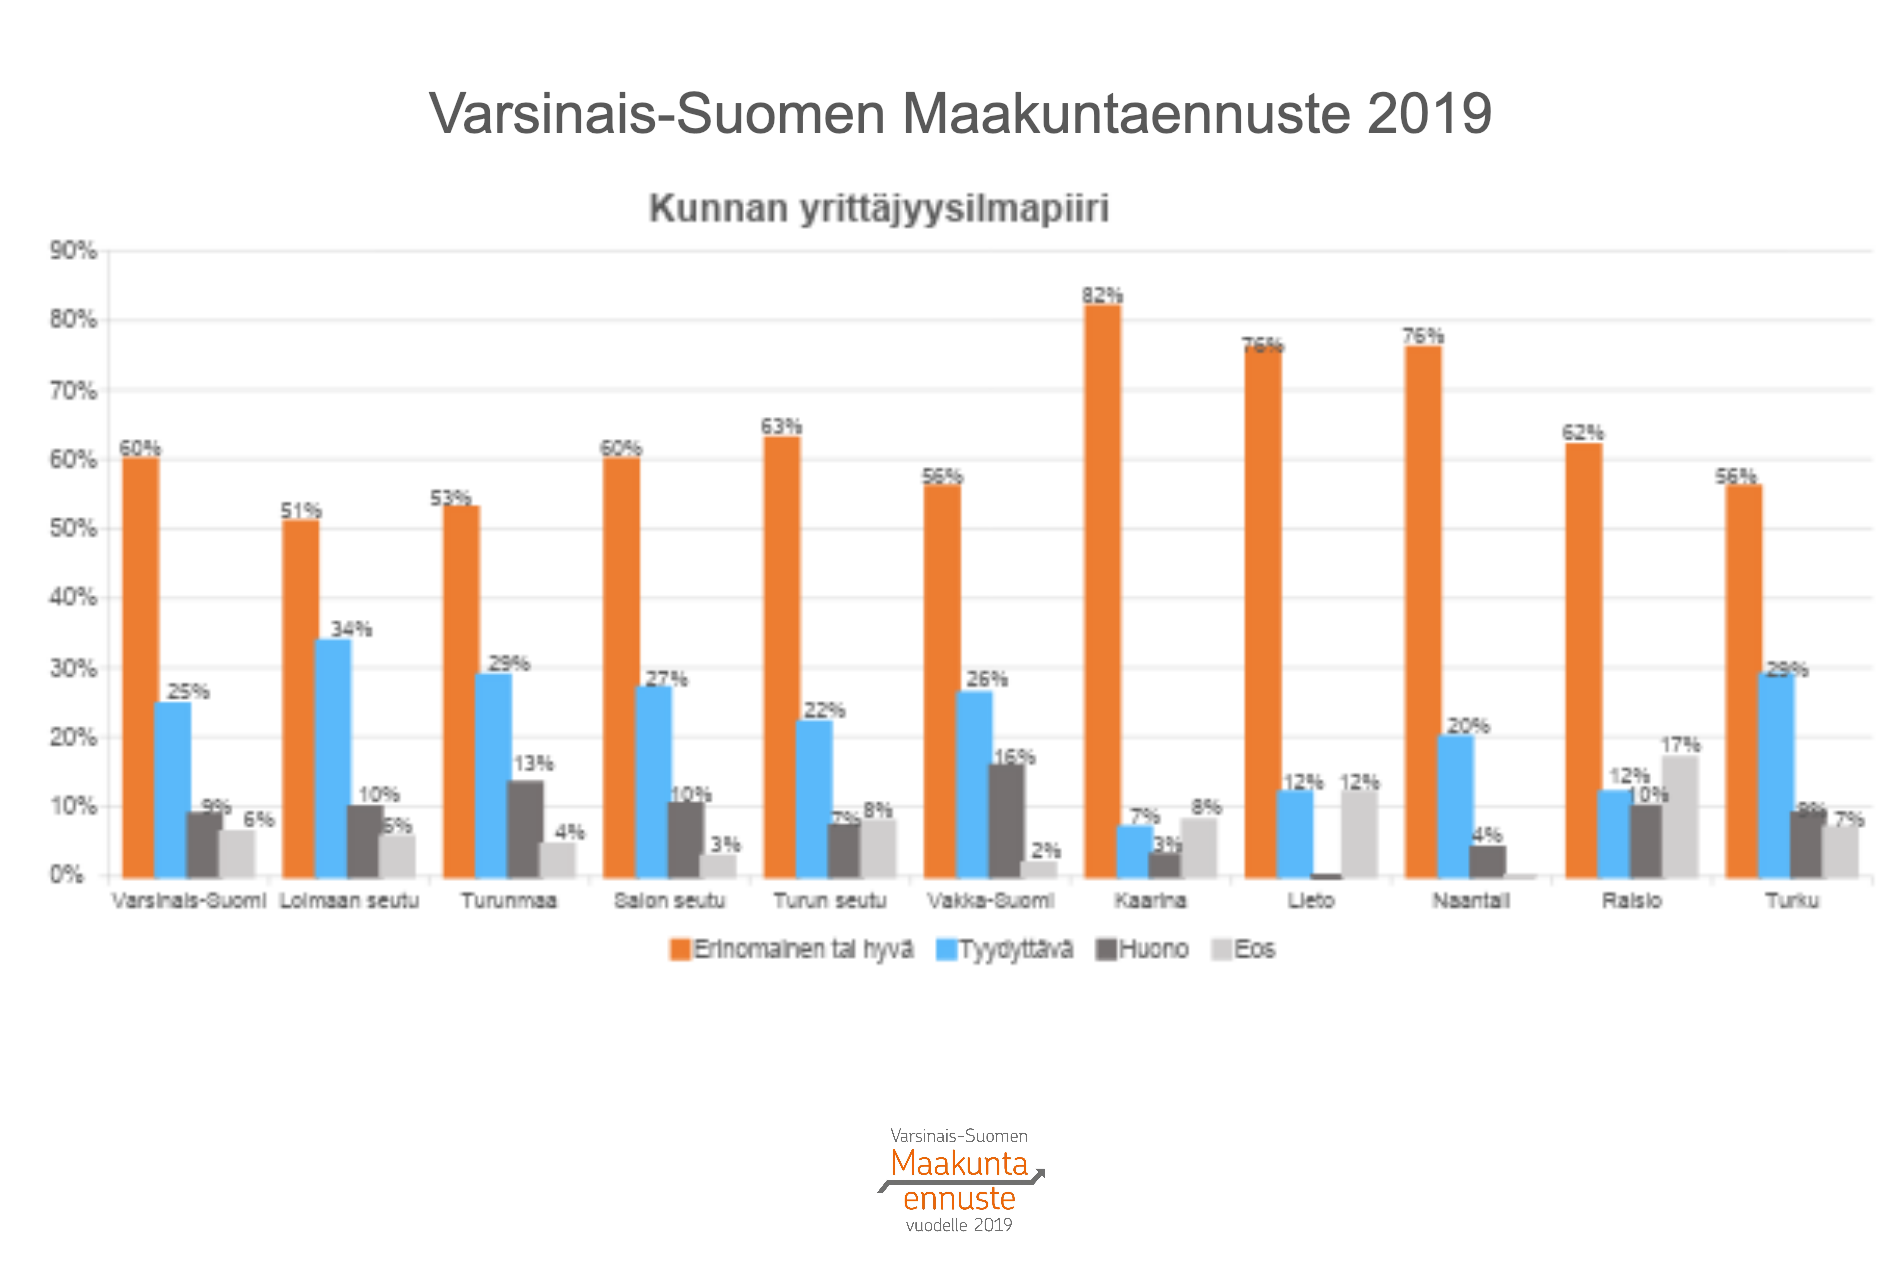 Varsinais-Suomen yrittäjyysilmapiiri